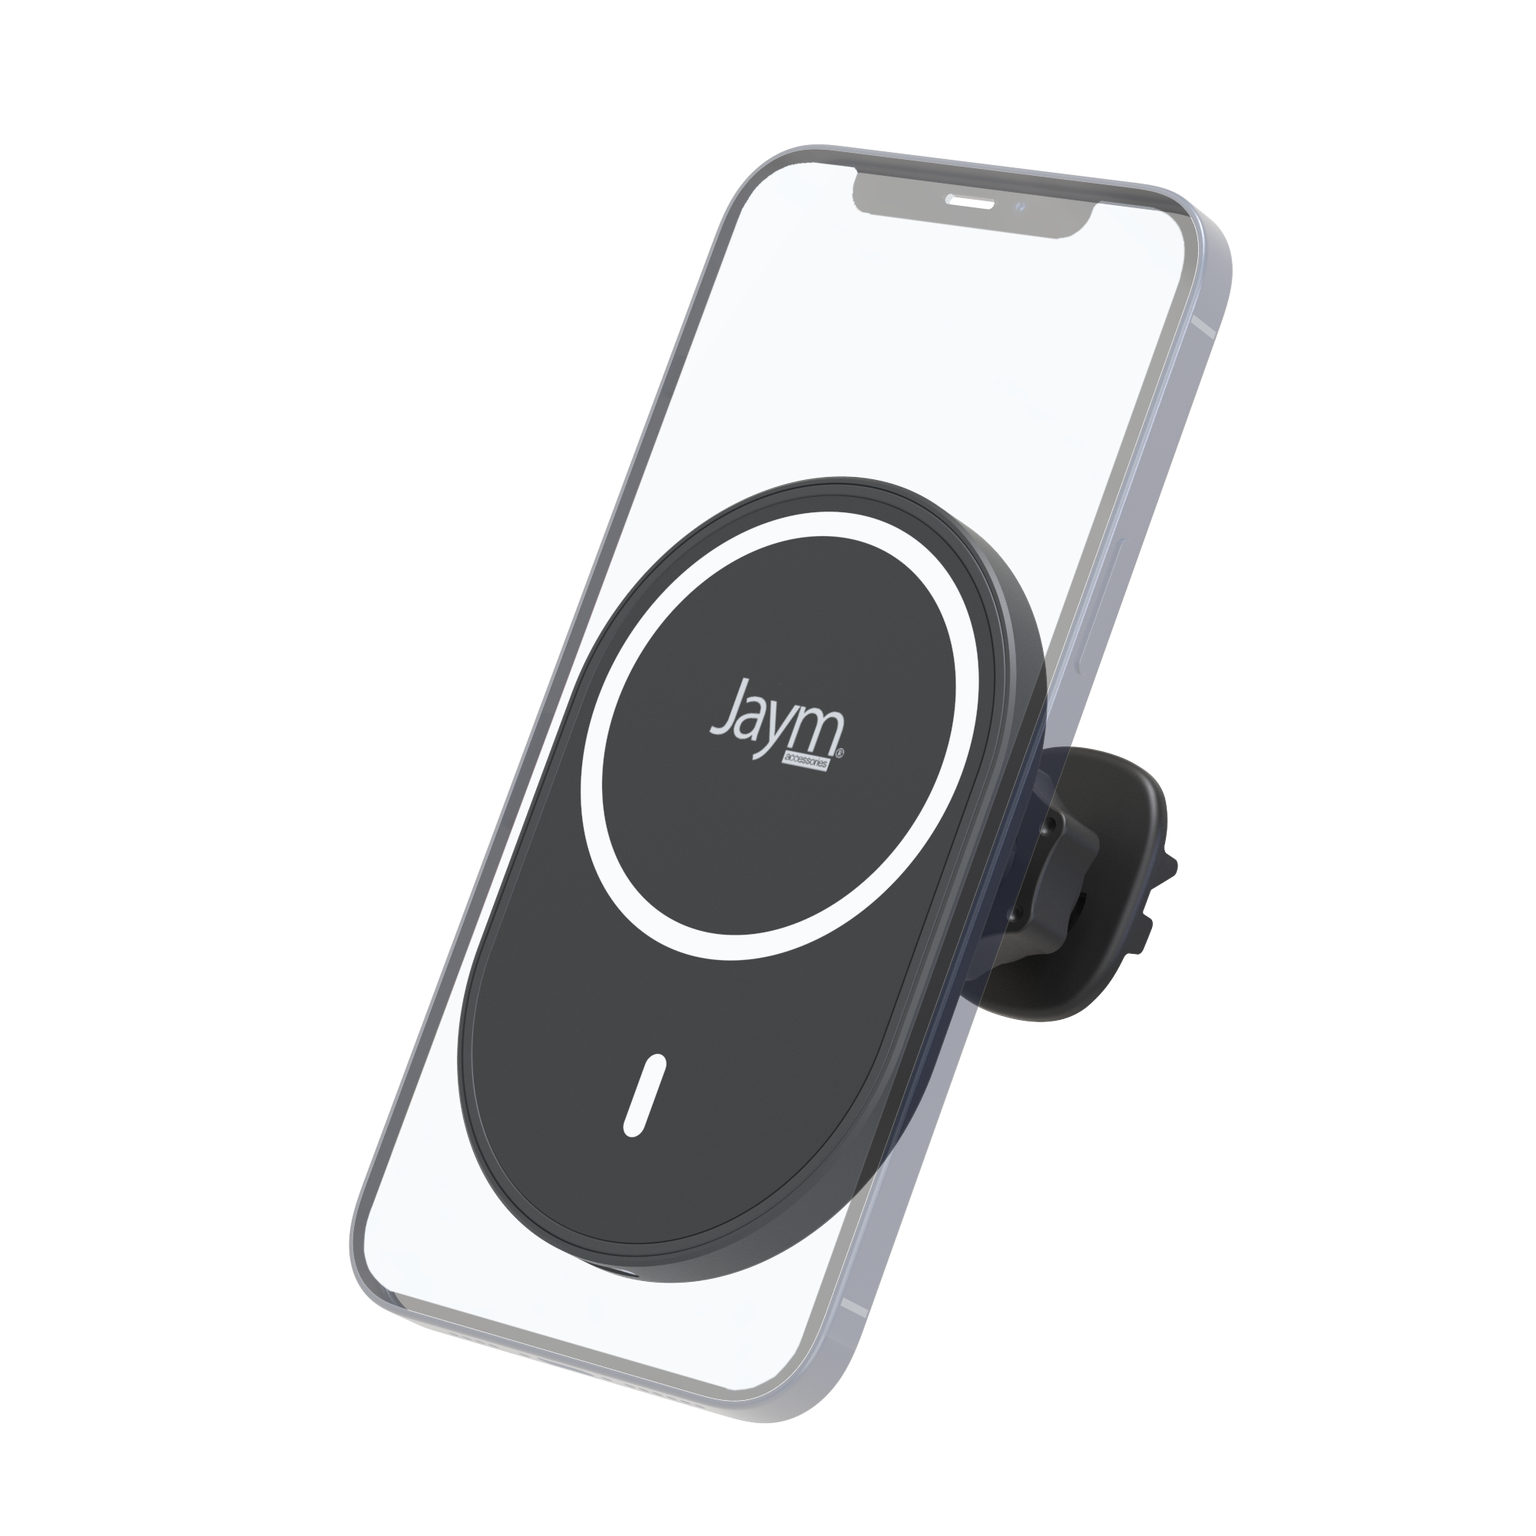 BigBen CONNECTED - Stylet pour téléphone portable, tablette - noir